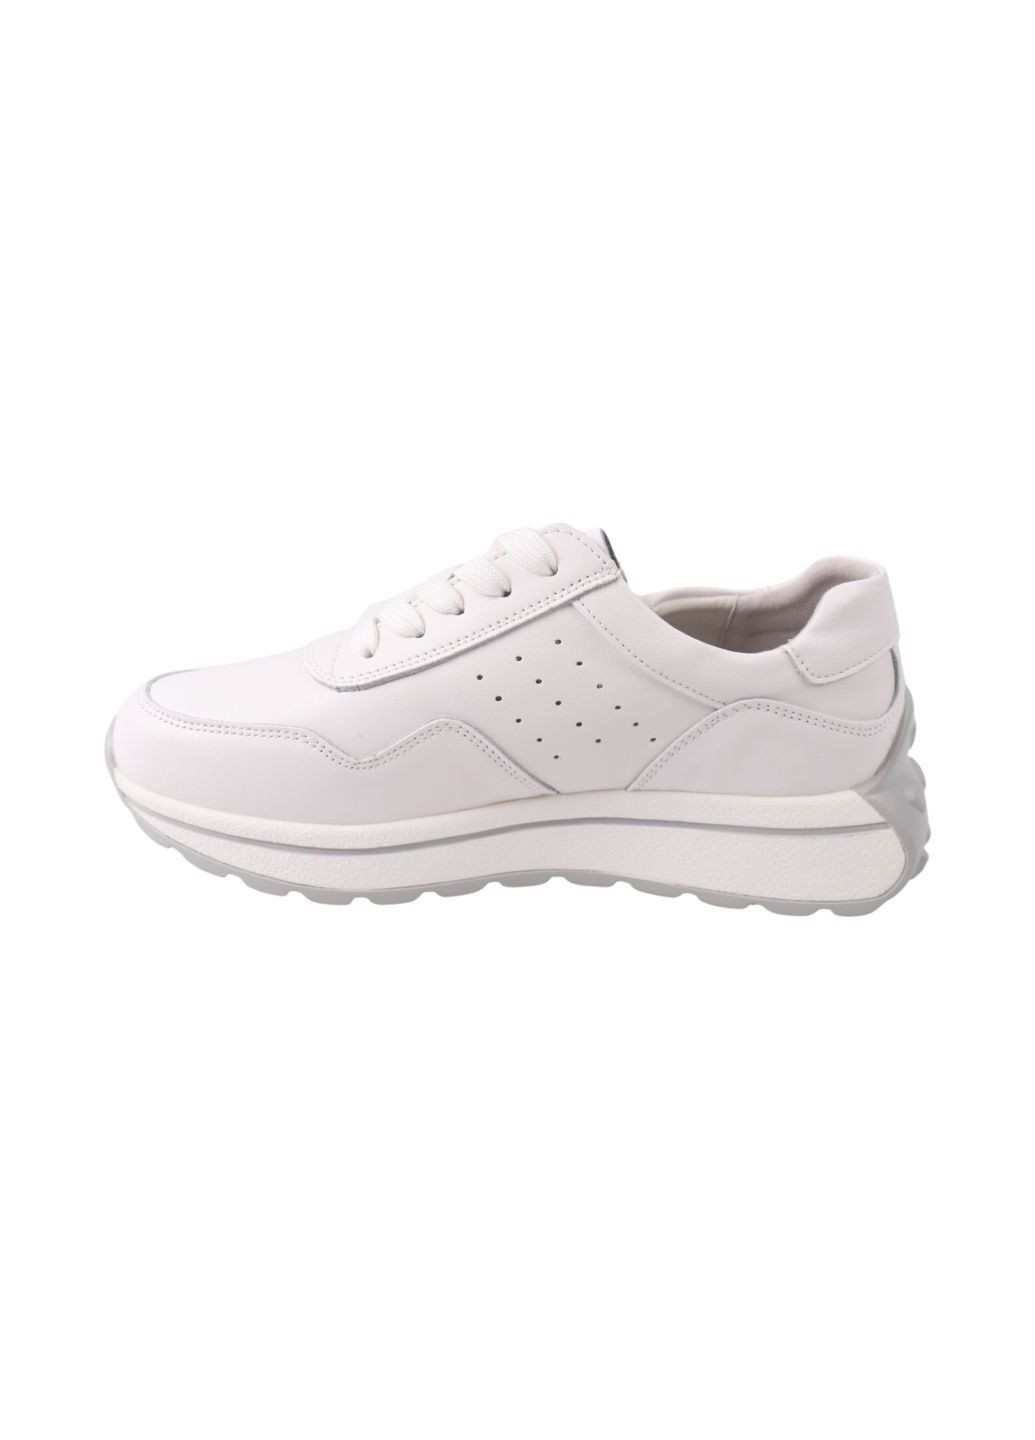 Білі кросівки жіночі білі натуральна шкіра Renzoni 1065-24DTS